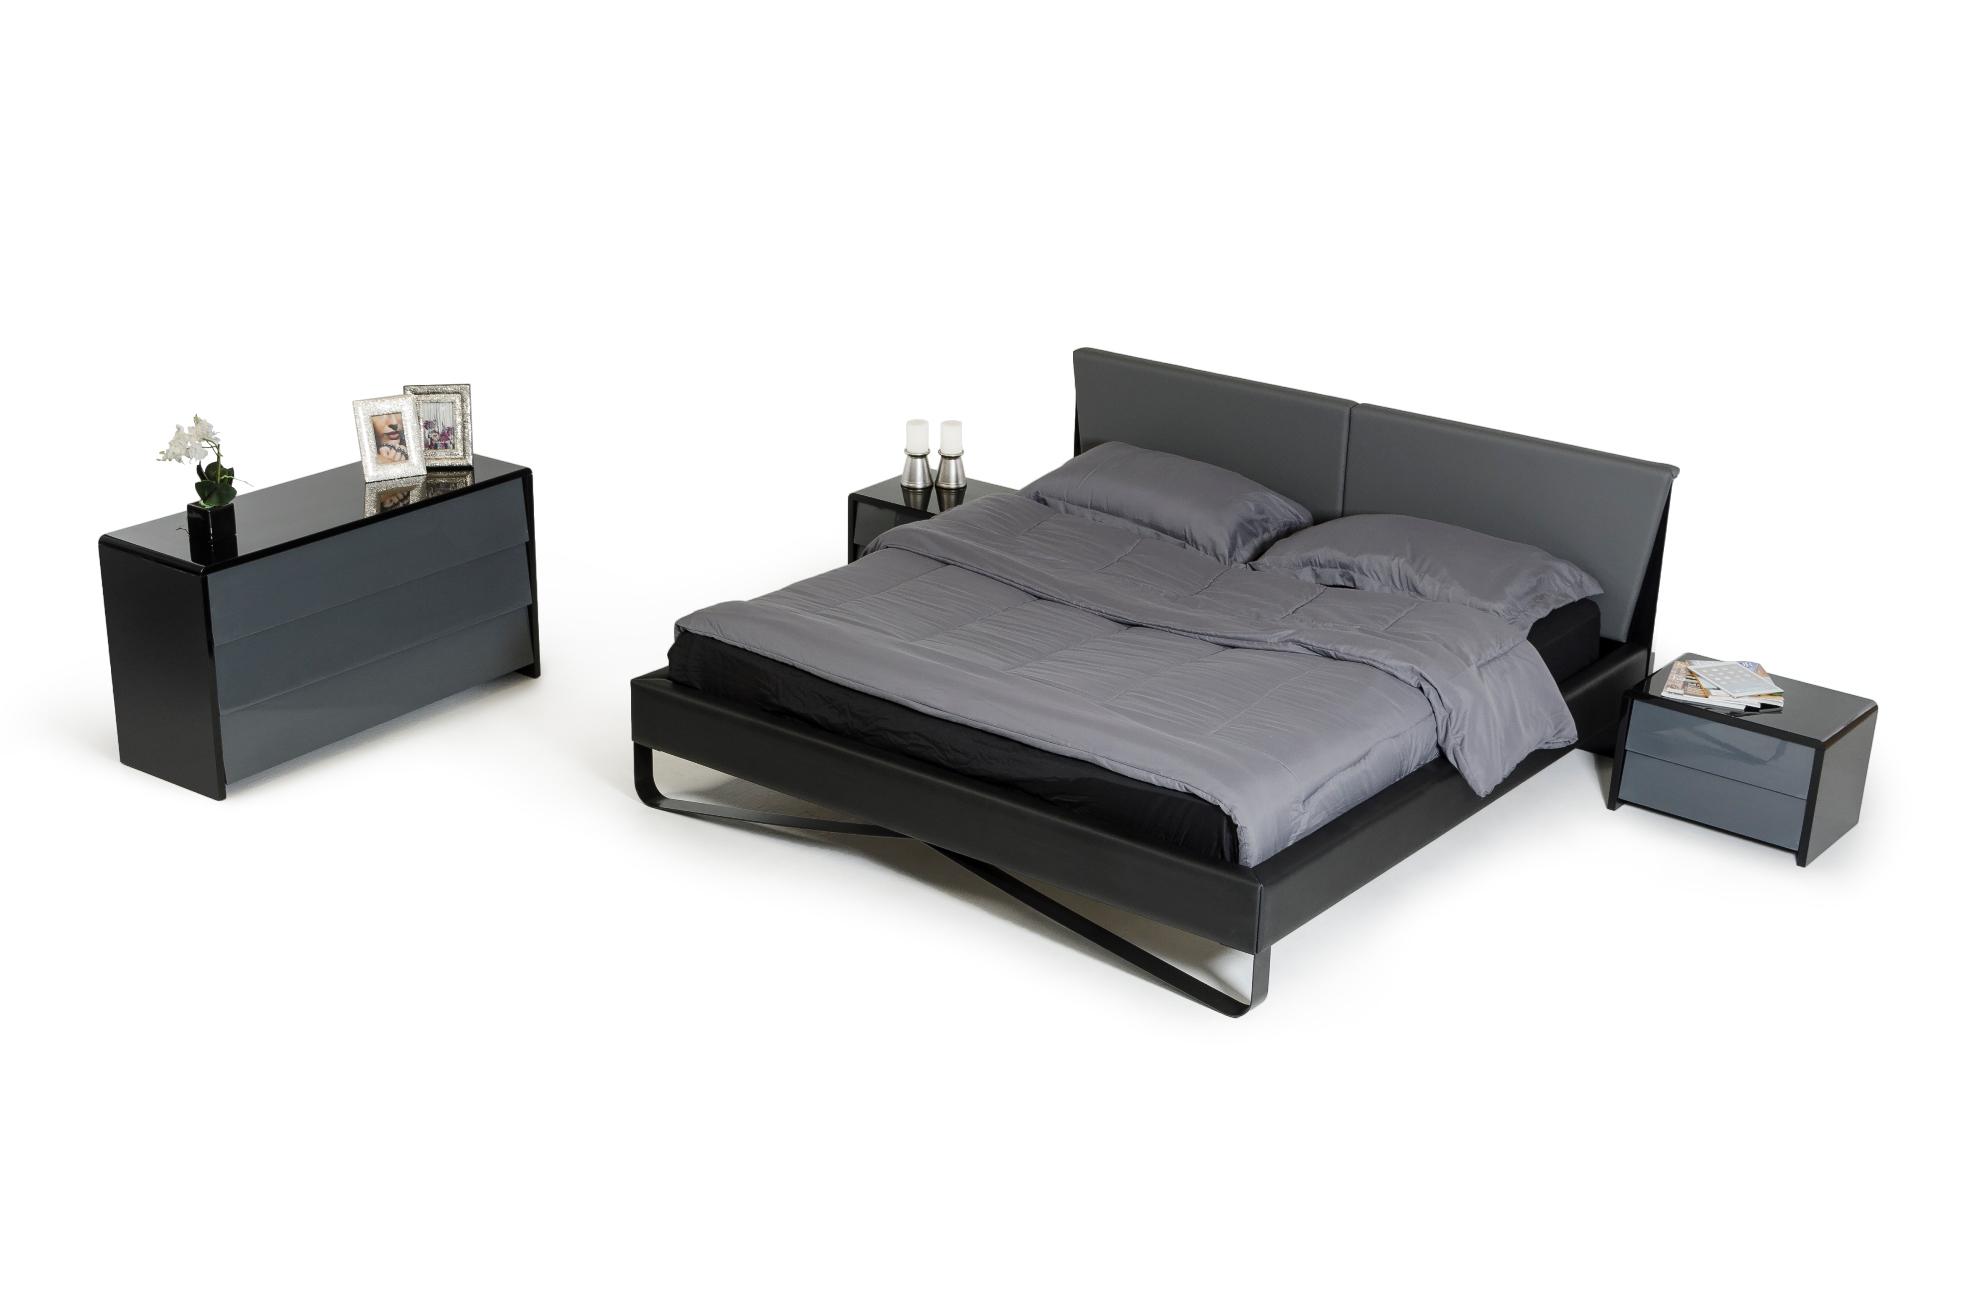 

    
VGWCVB01-EK VIG Furniture Platform Bed
